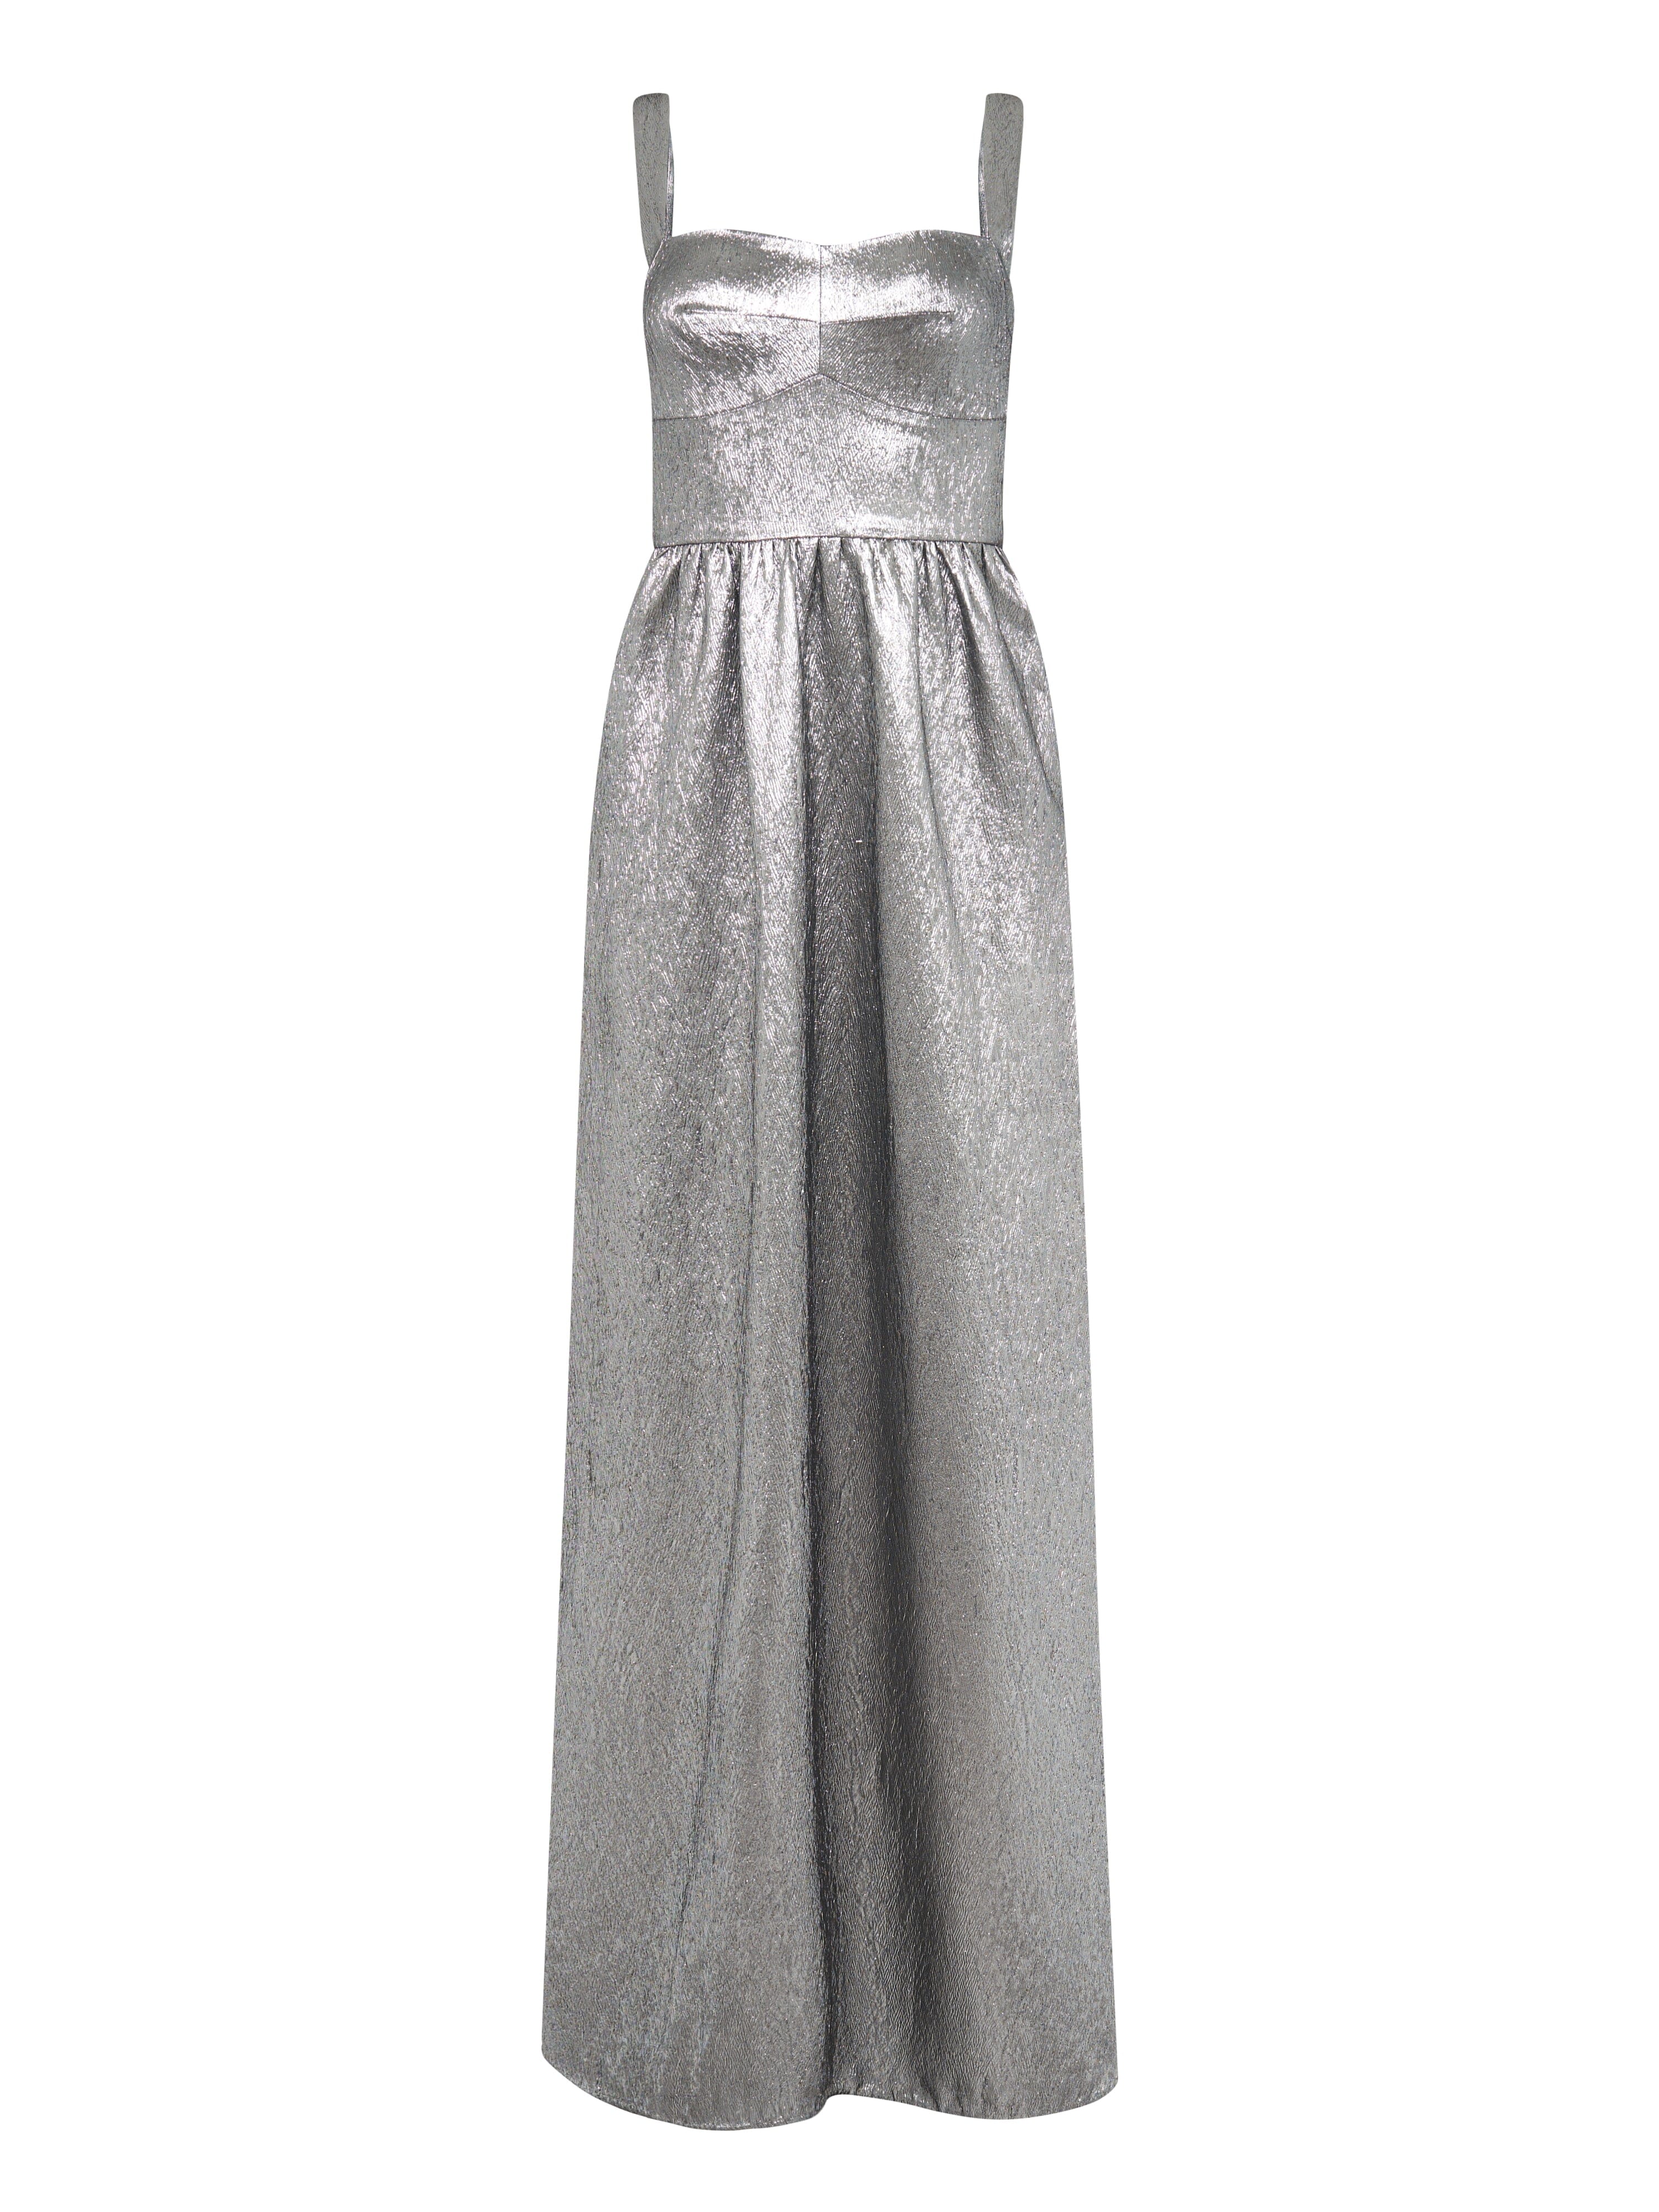 Rachel Long Dress in Silver